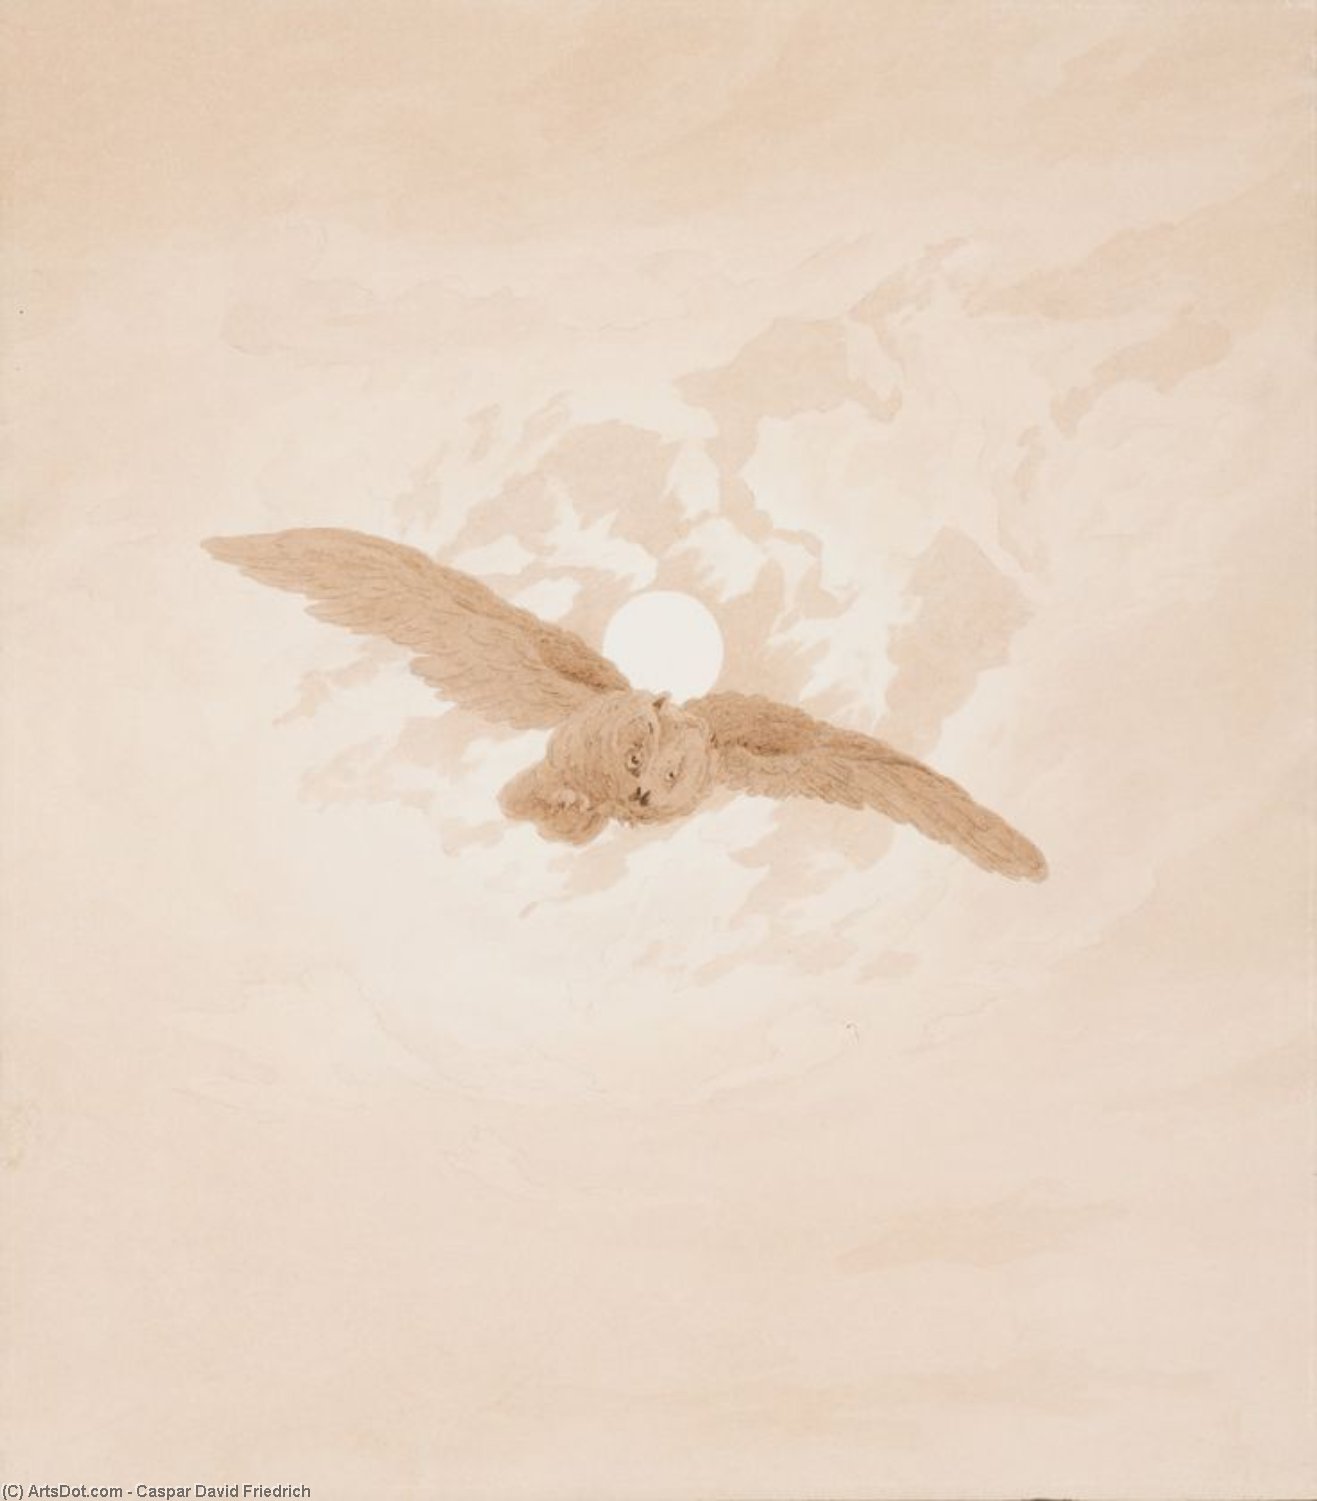 WikiOO.org - Εγκυκλοπαίδεια Καλών Τεχνών - Ζωγραφική, έργα τέχνης Caspar David Friedrich - Owl Flying against a Moonlit Sky